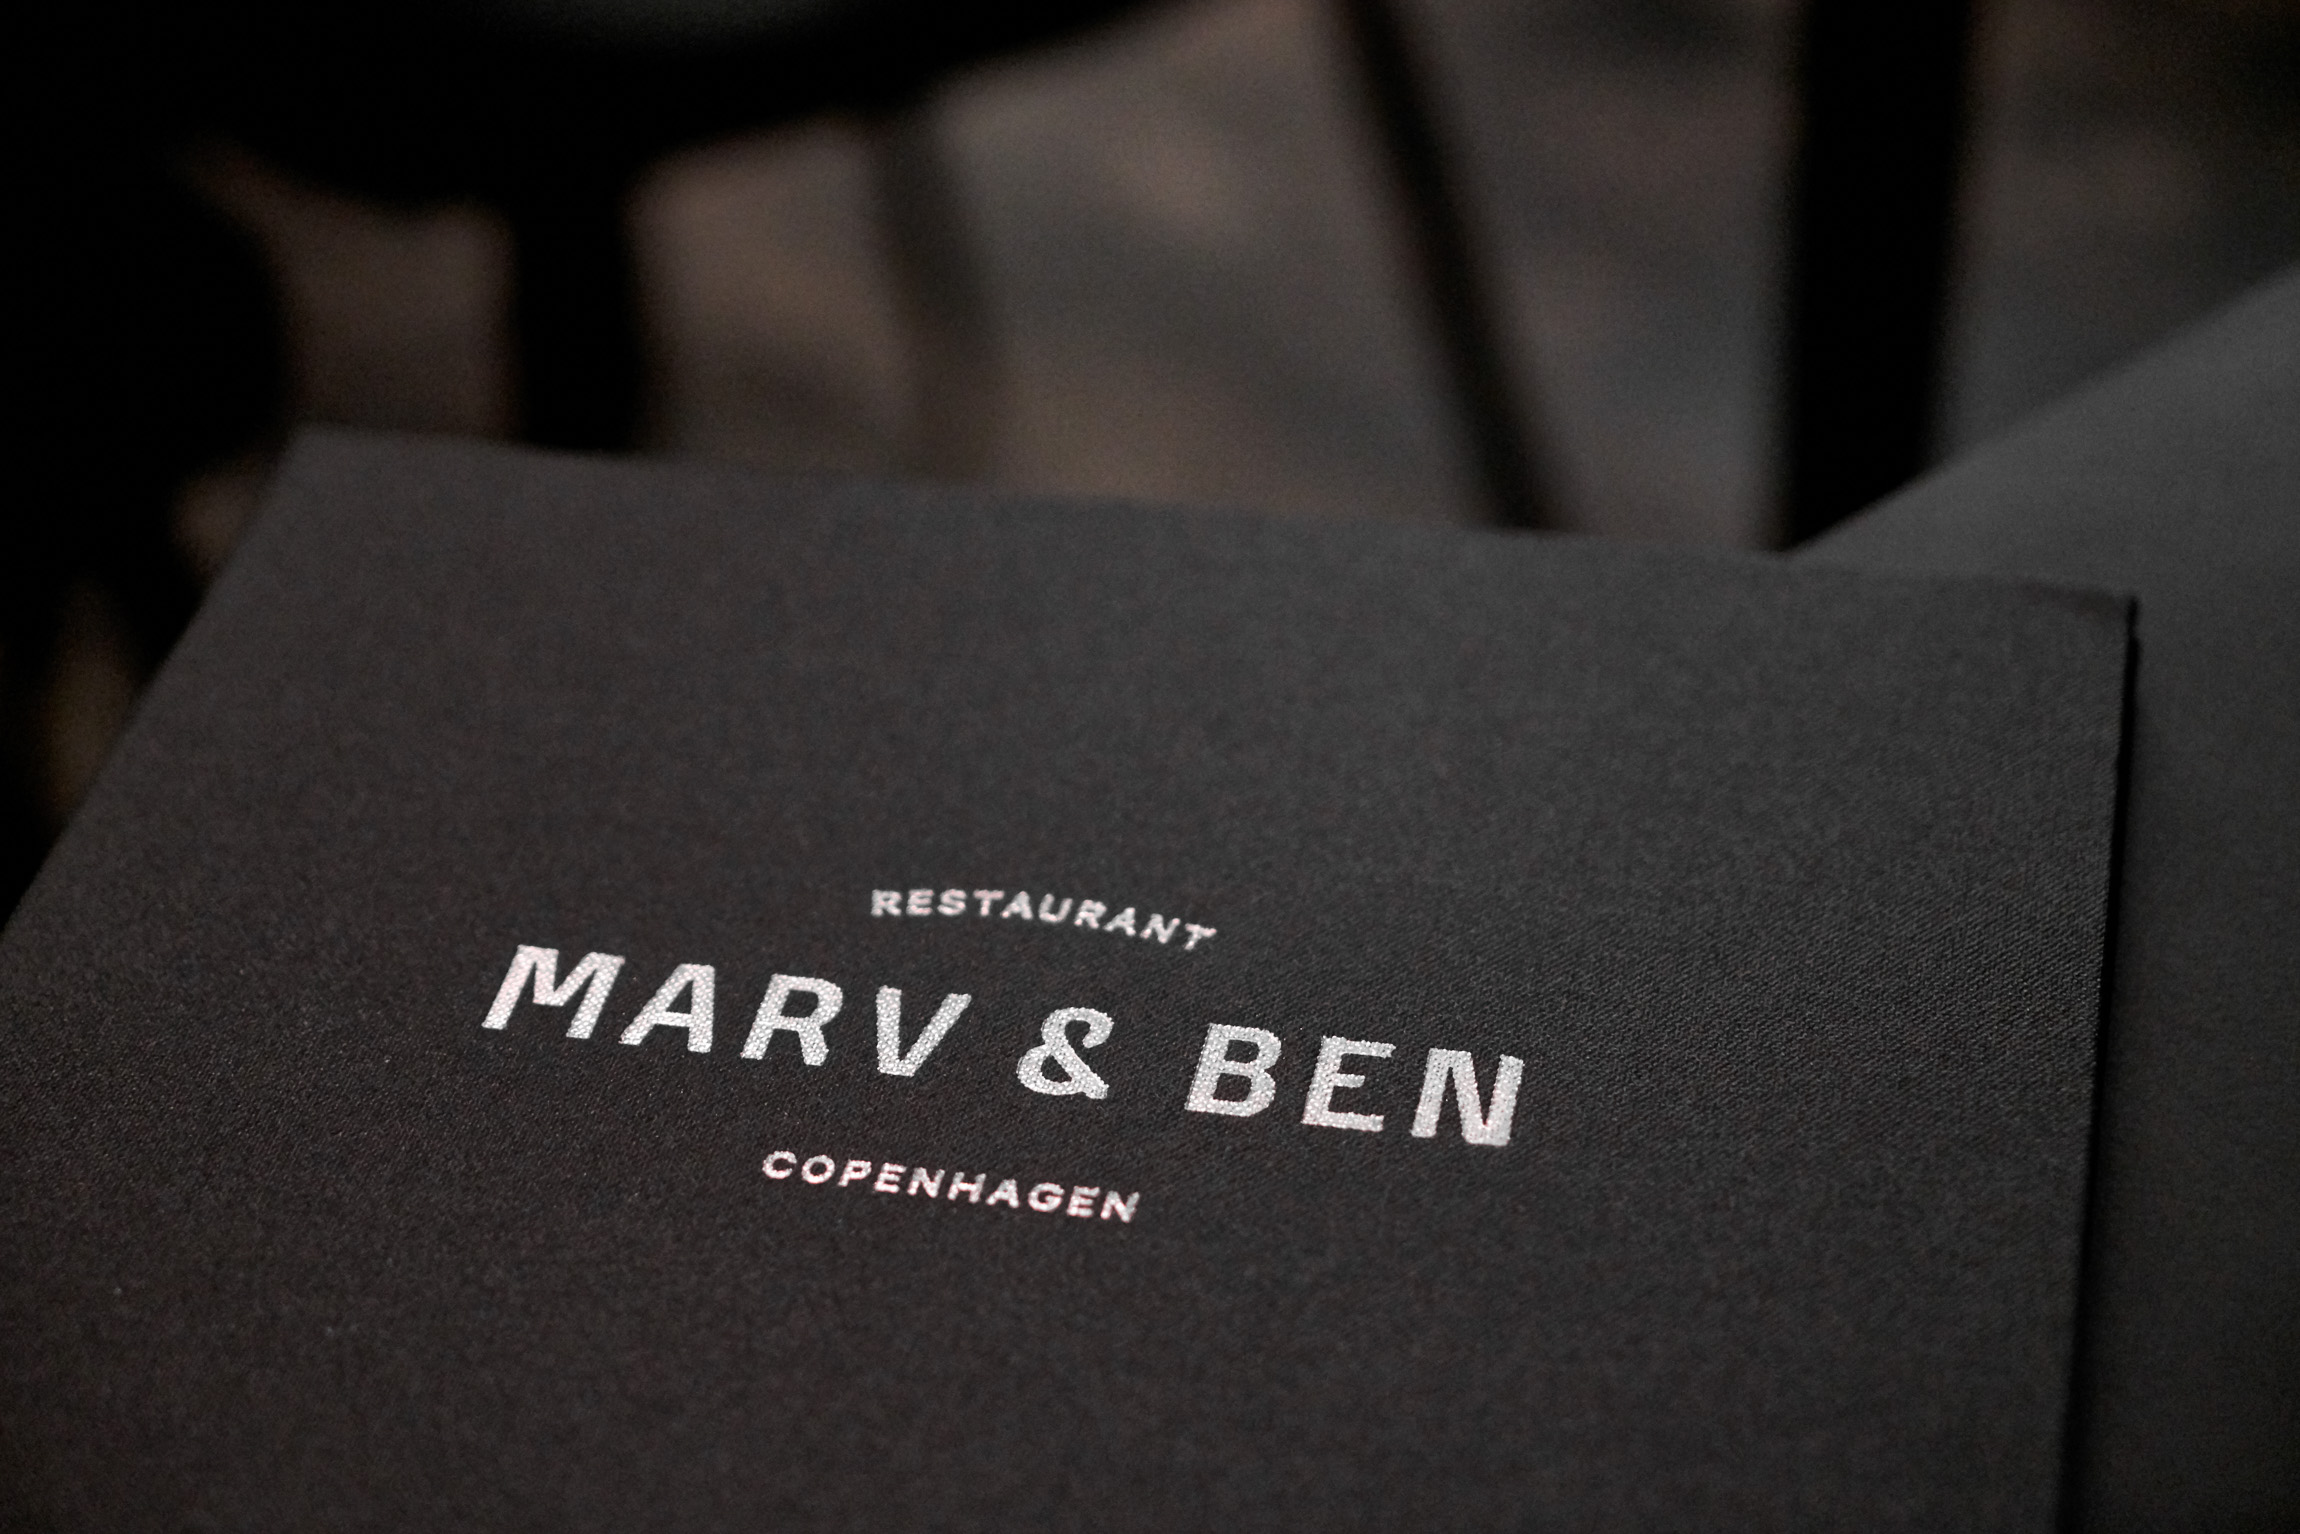 Marv & Ben - Best Restaurants Copenhagen 